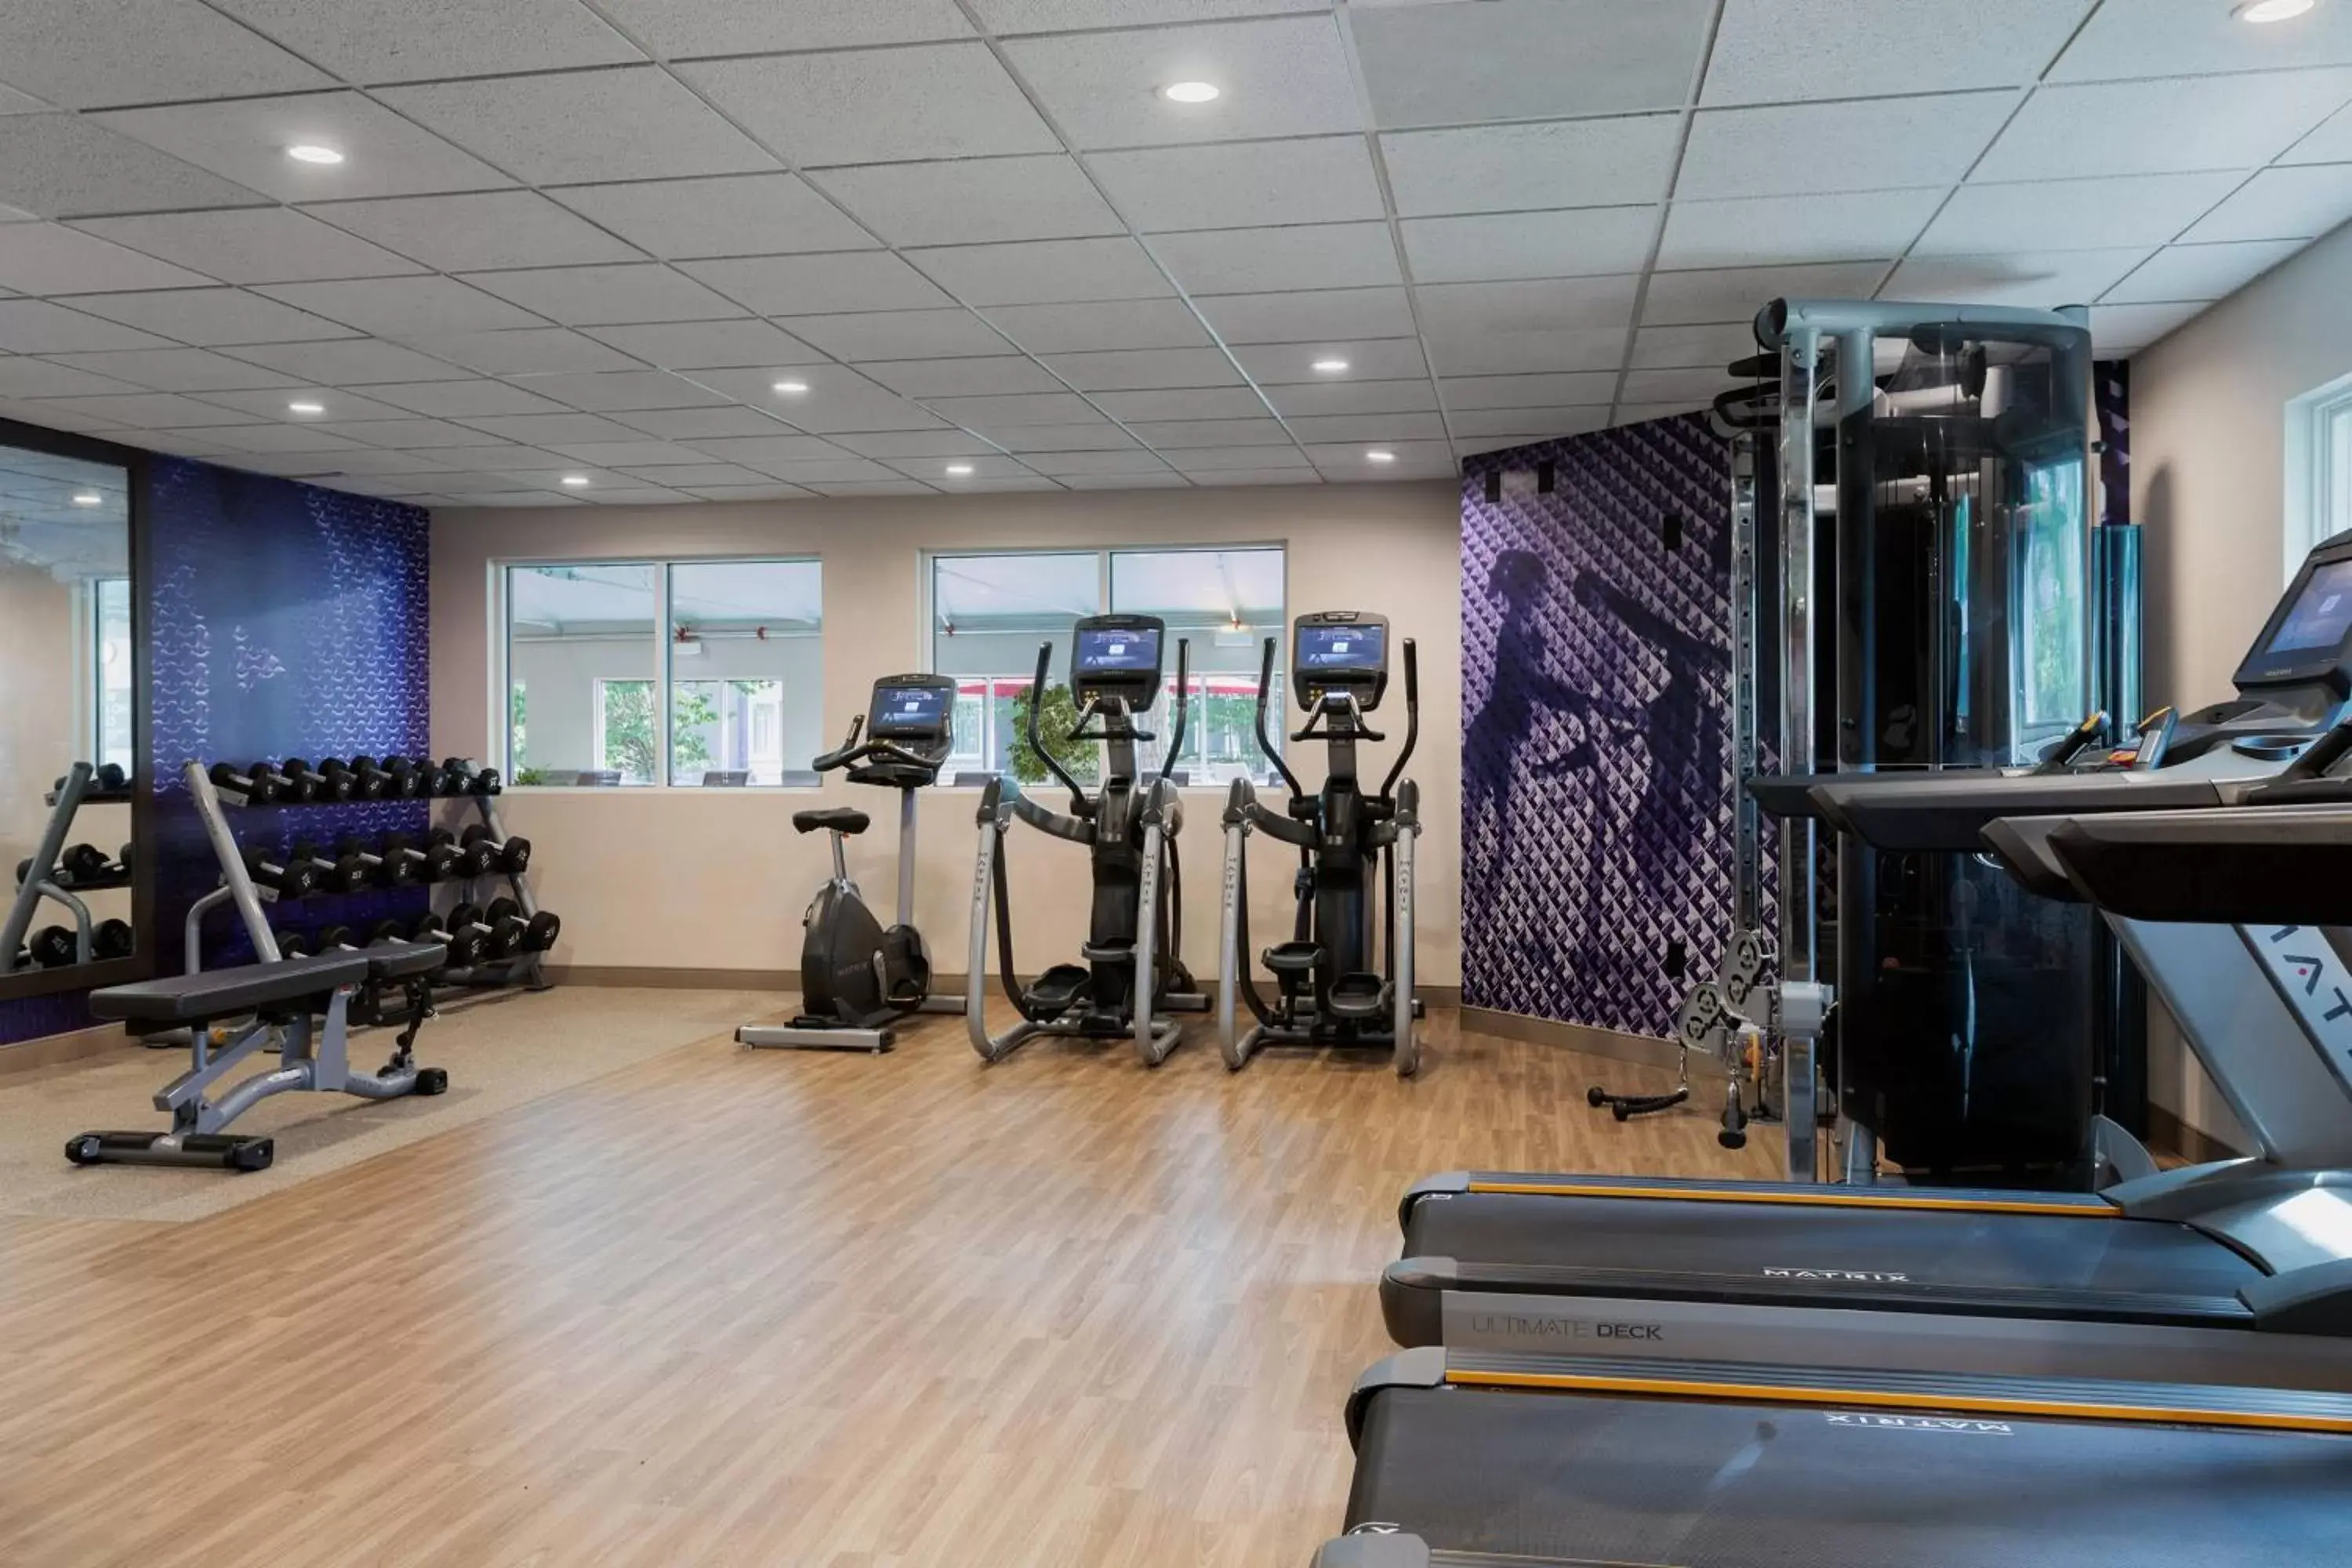 Fitness centre/facilities, Fitness Center/Facilities in Delta Hotels by Marriott Burlington